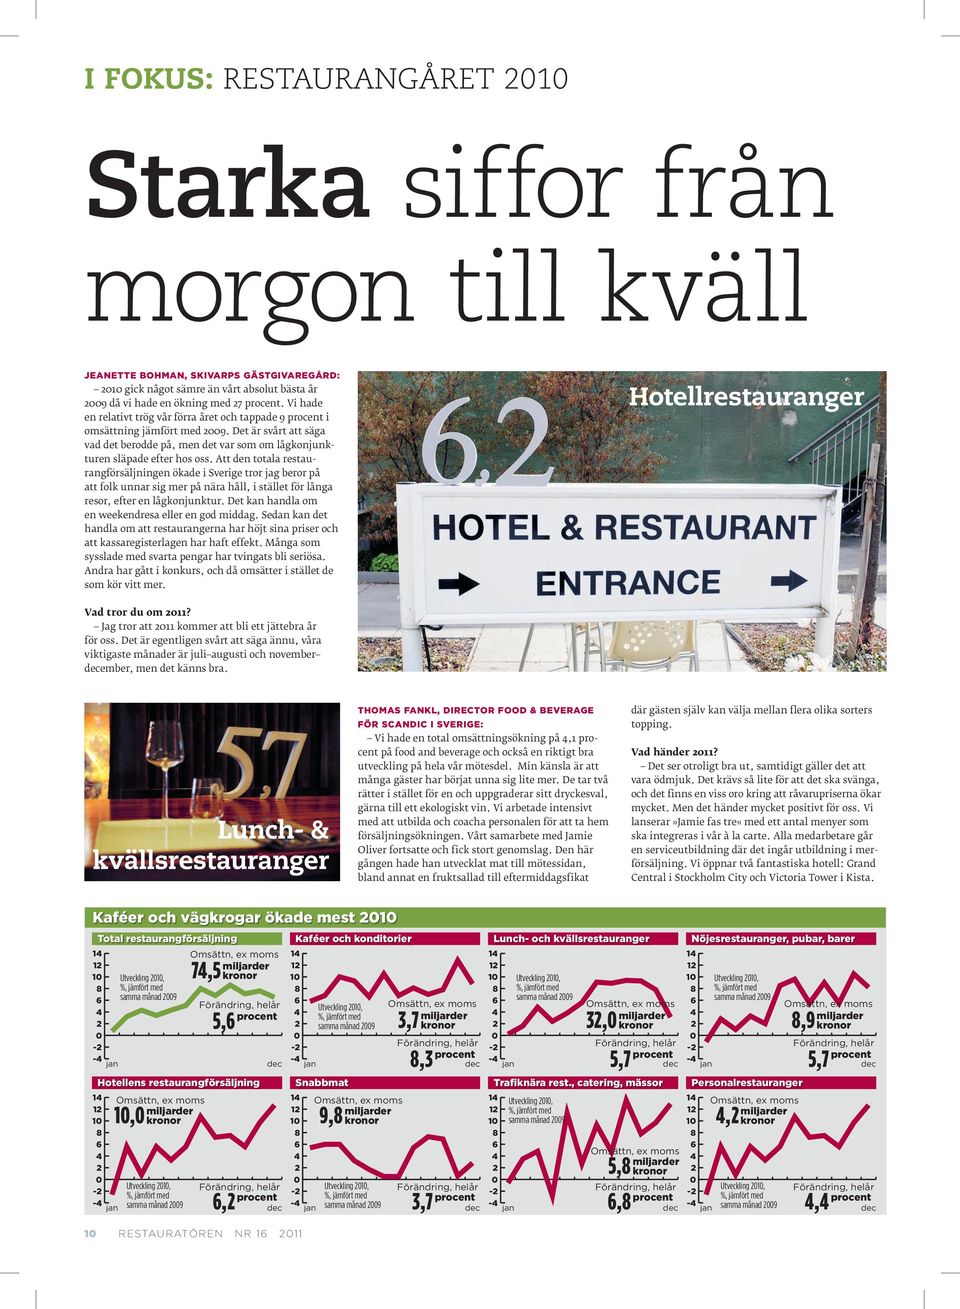 Att den totala restaurangförsäljningen ökade i Sverige tror jag beror på att folk unnar sig mer på nära håll, i stället för långa resor, efter en lågkonjunktur.